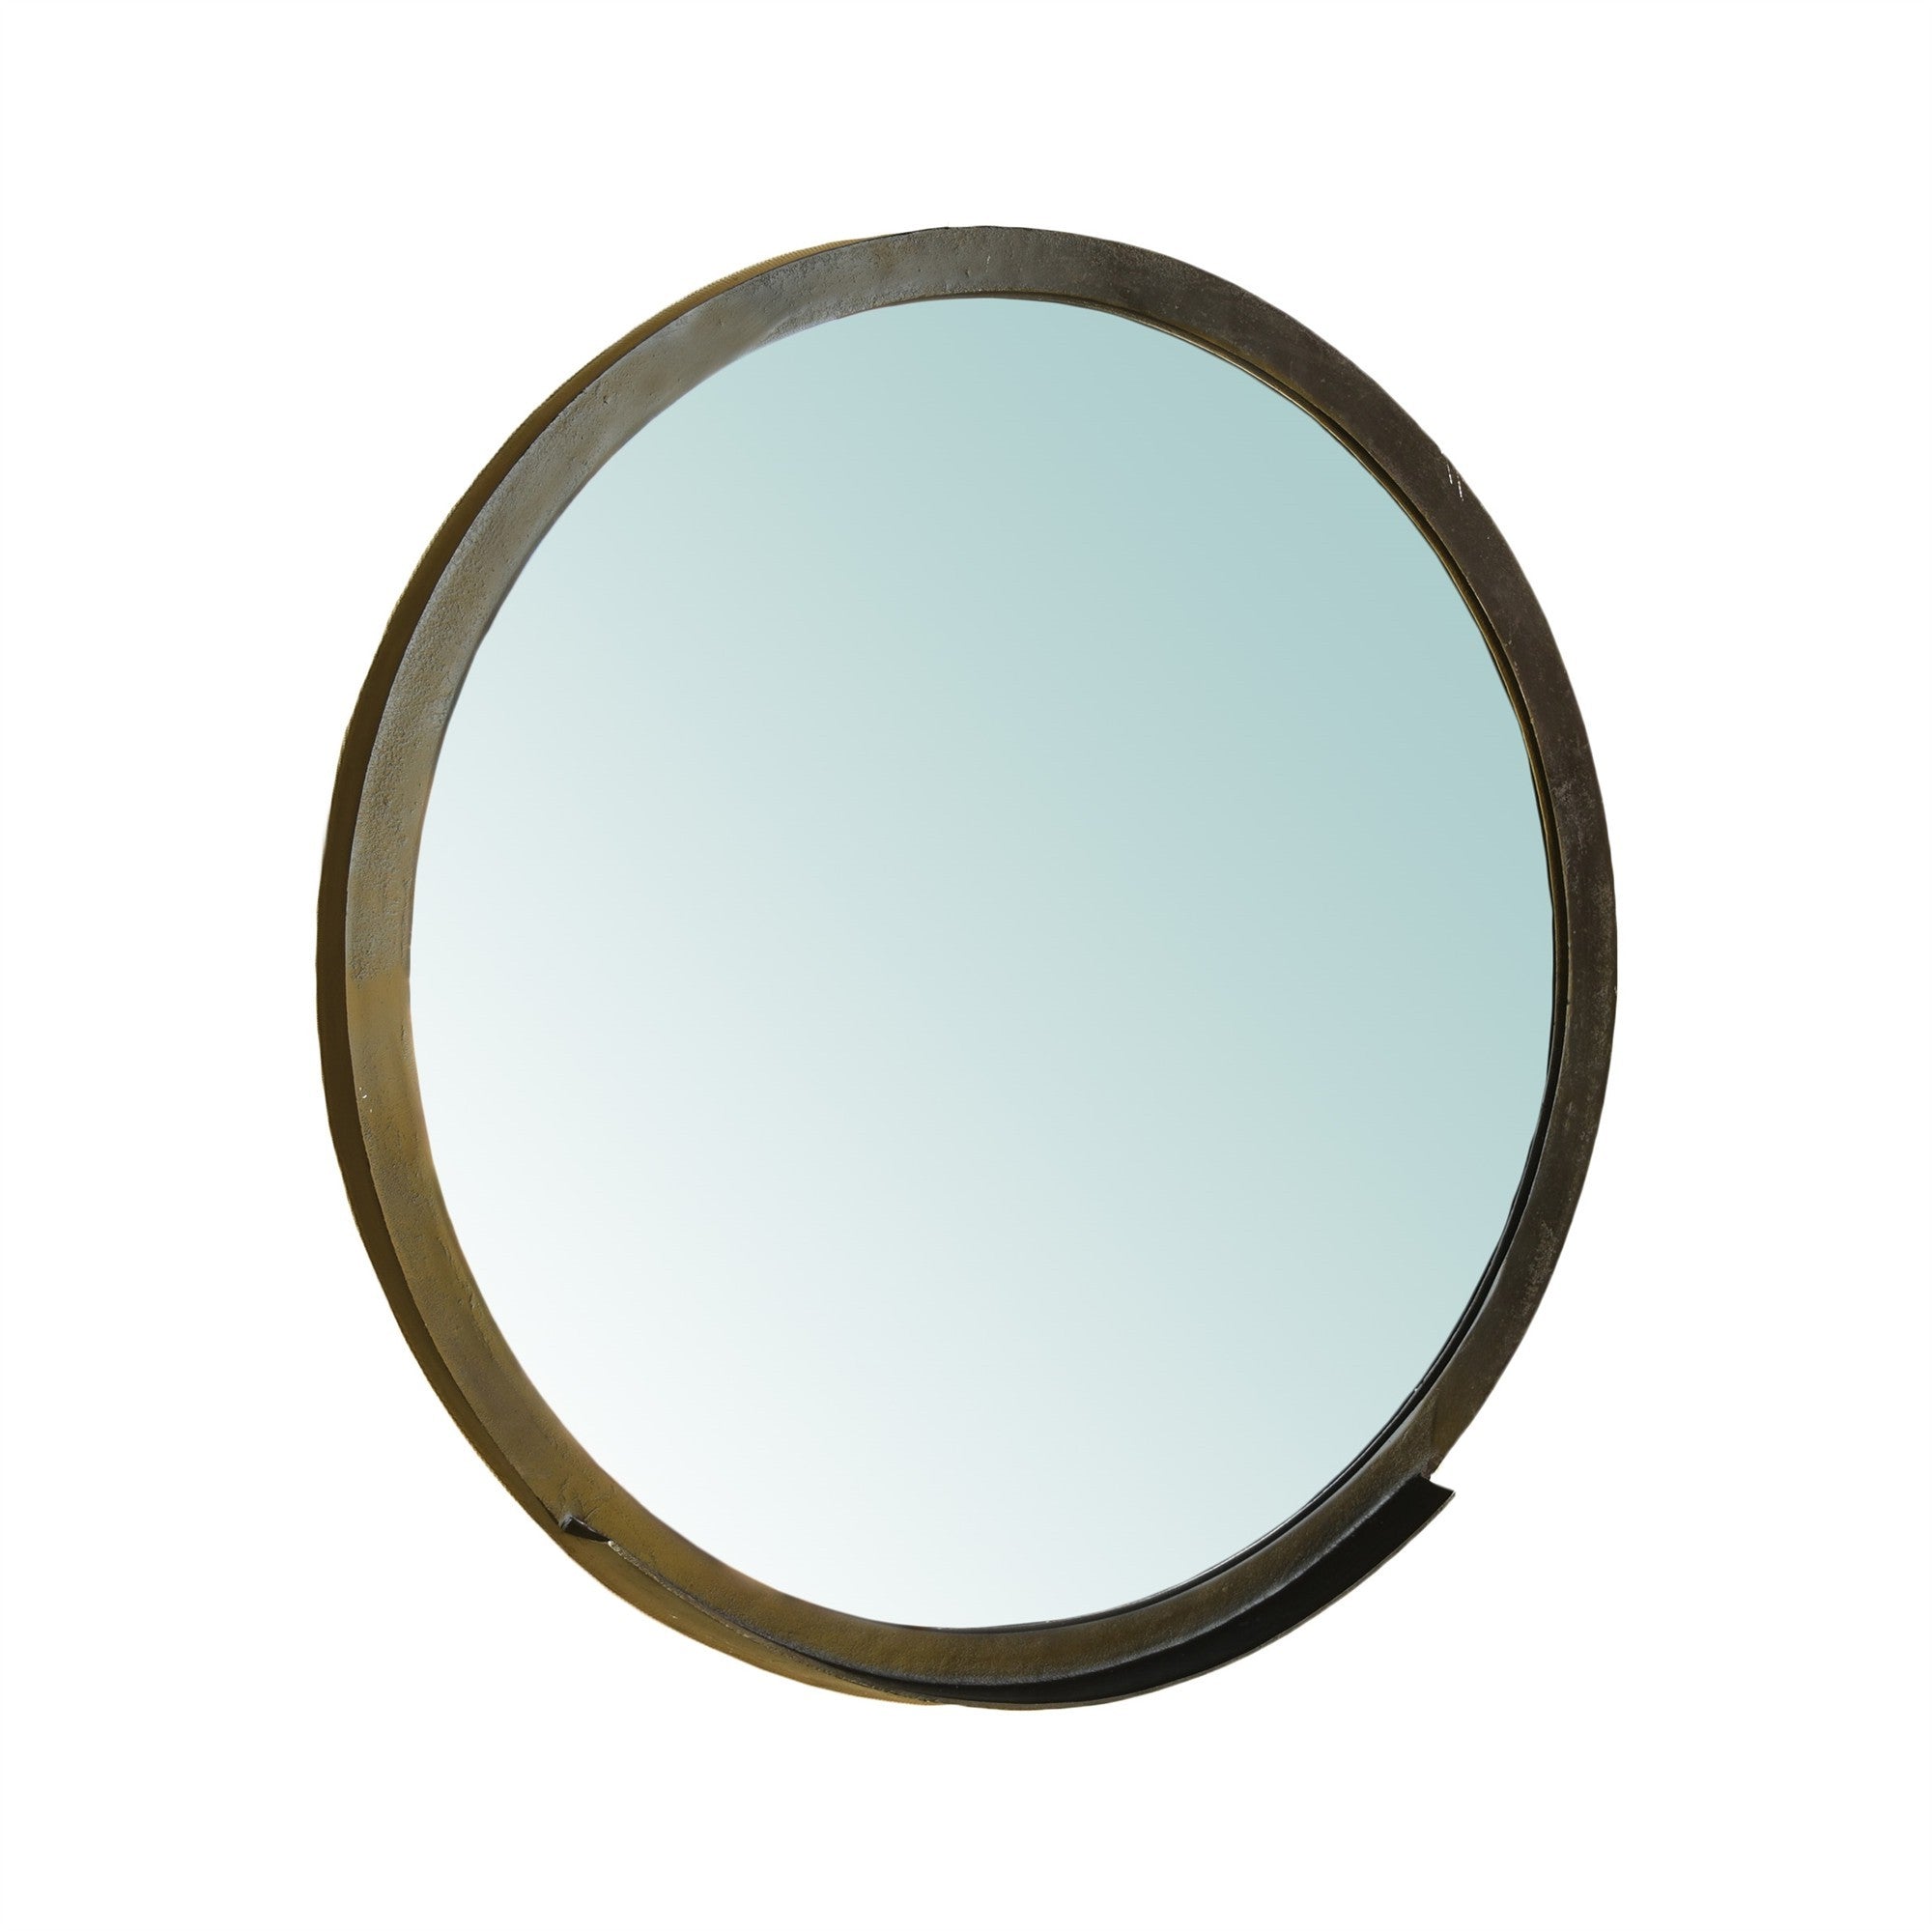 30" Gold Round Framed Accent Mirror